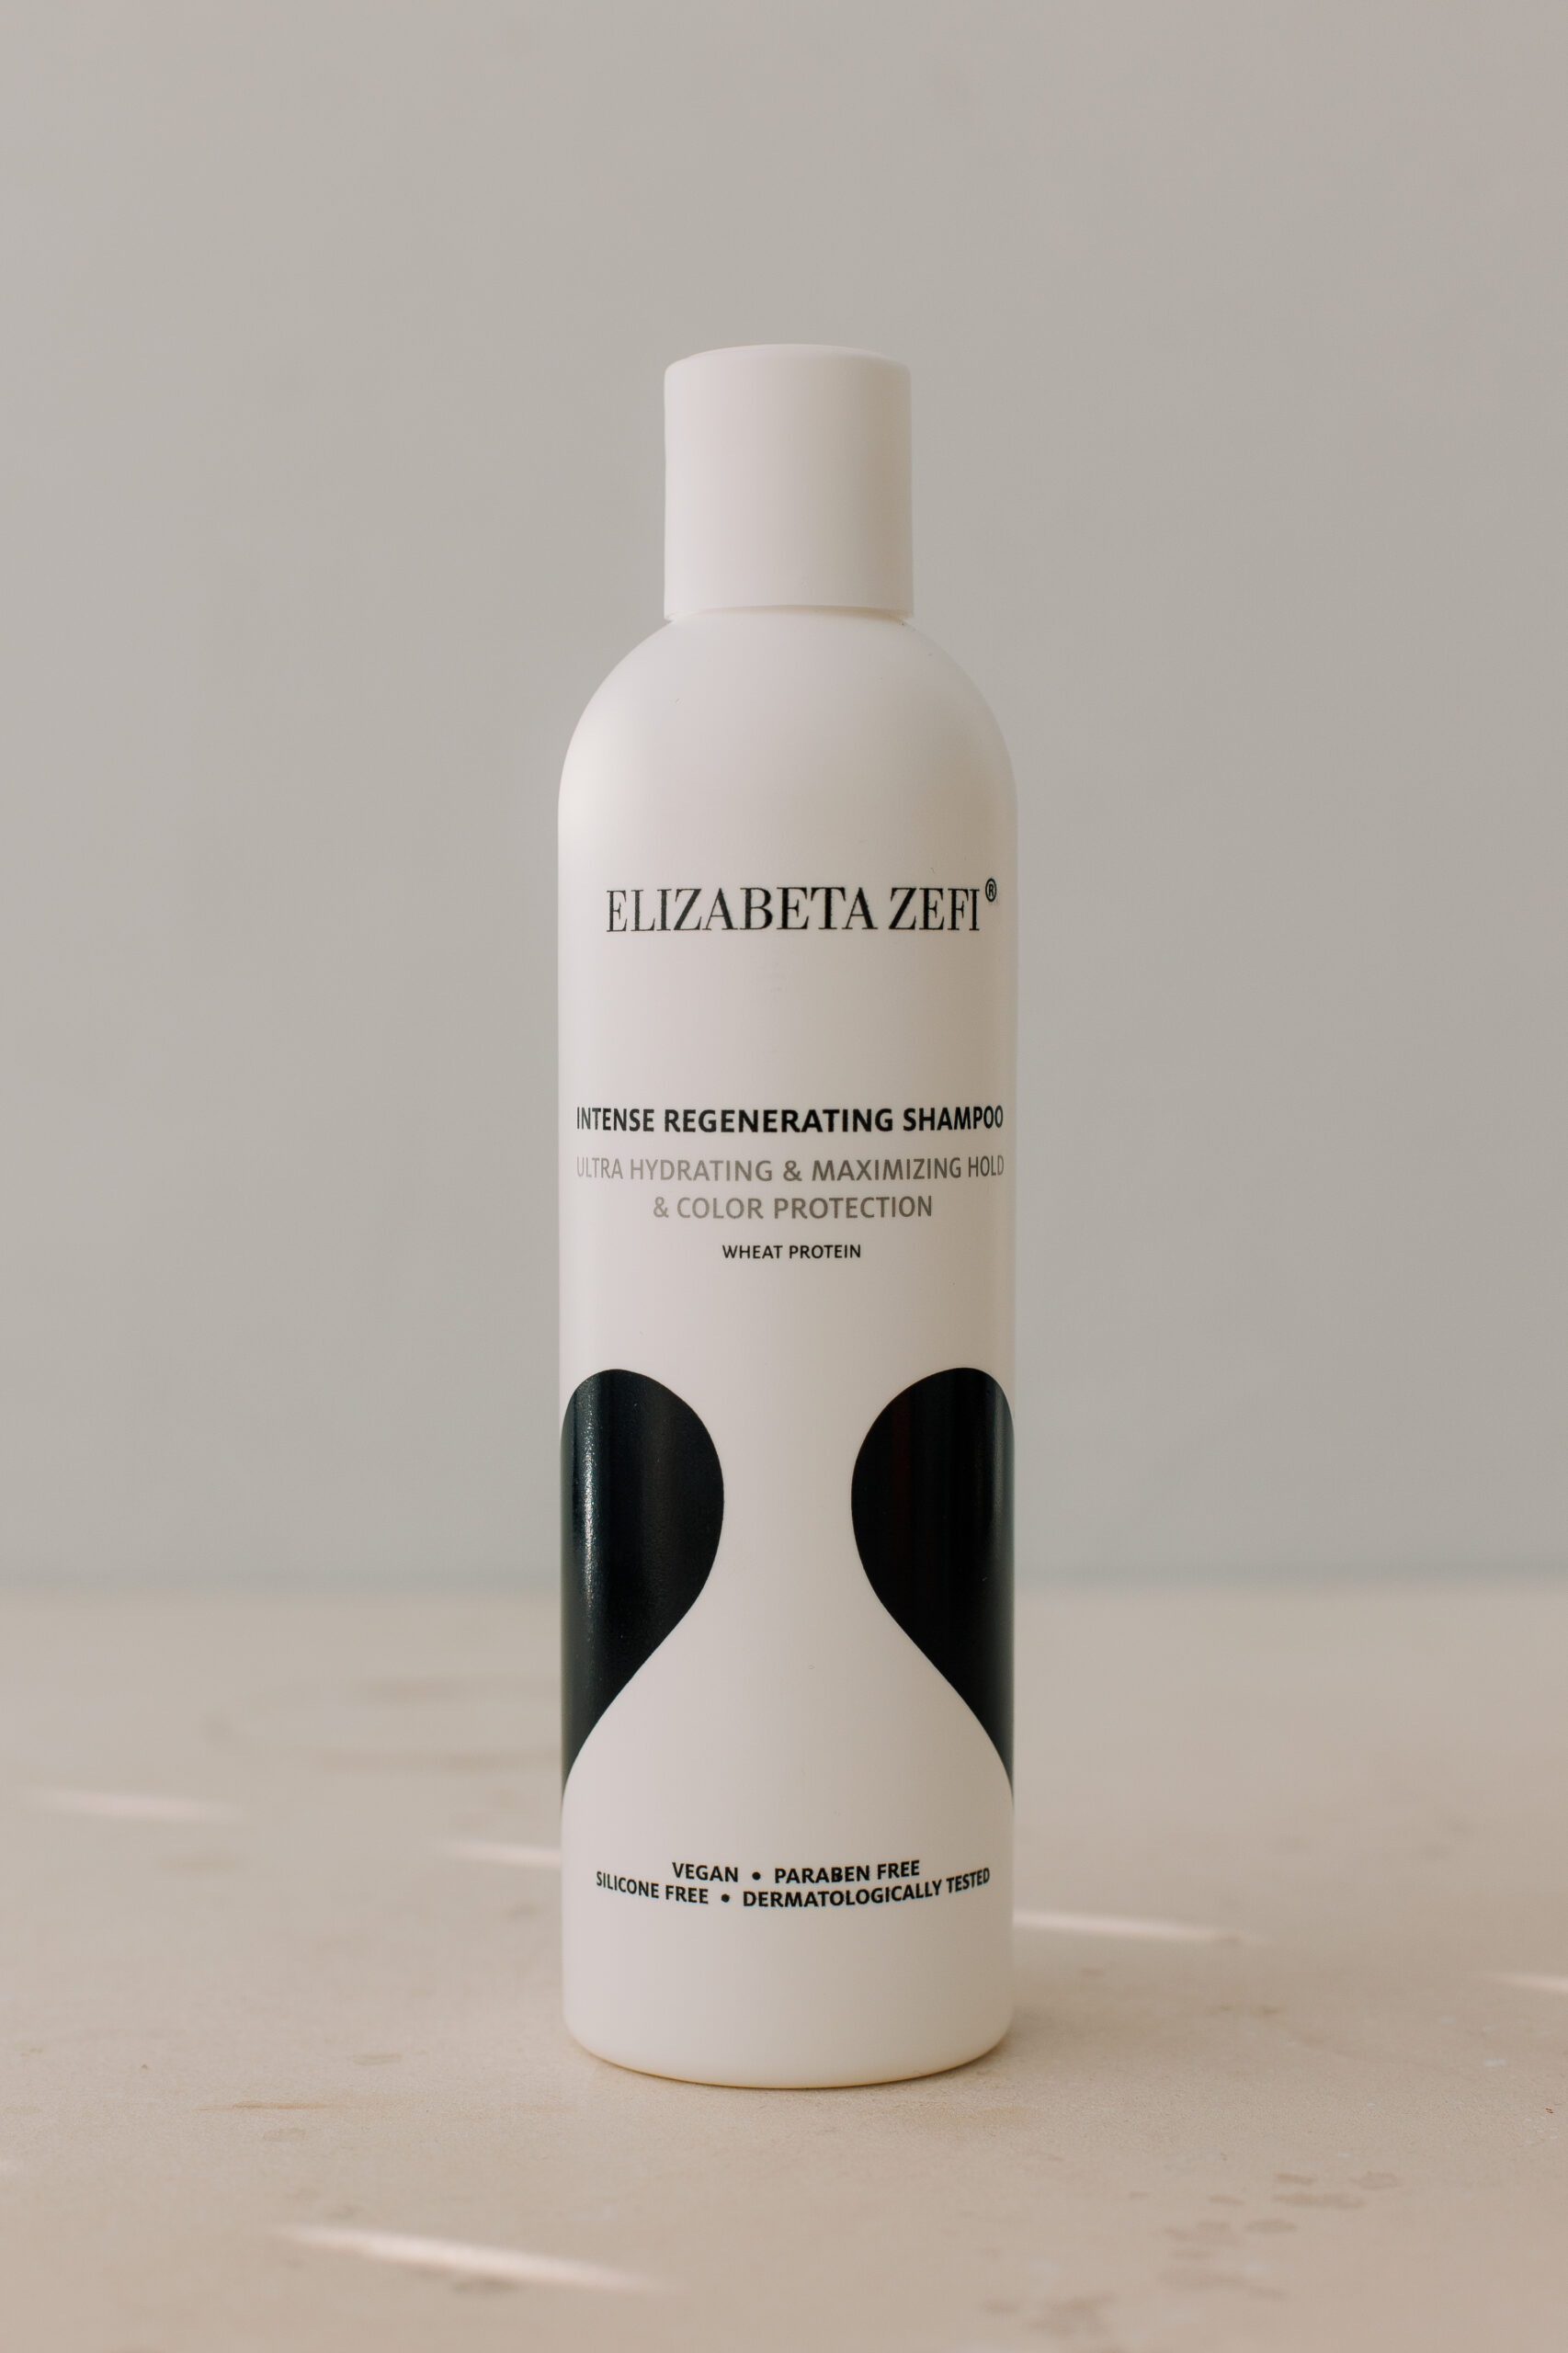 Интенсивно восстанавливающий шампунь для волос Elizabeta Zefi Intense Regenerating Shampoo 250ml